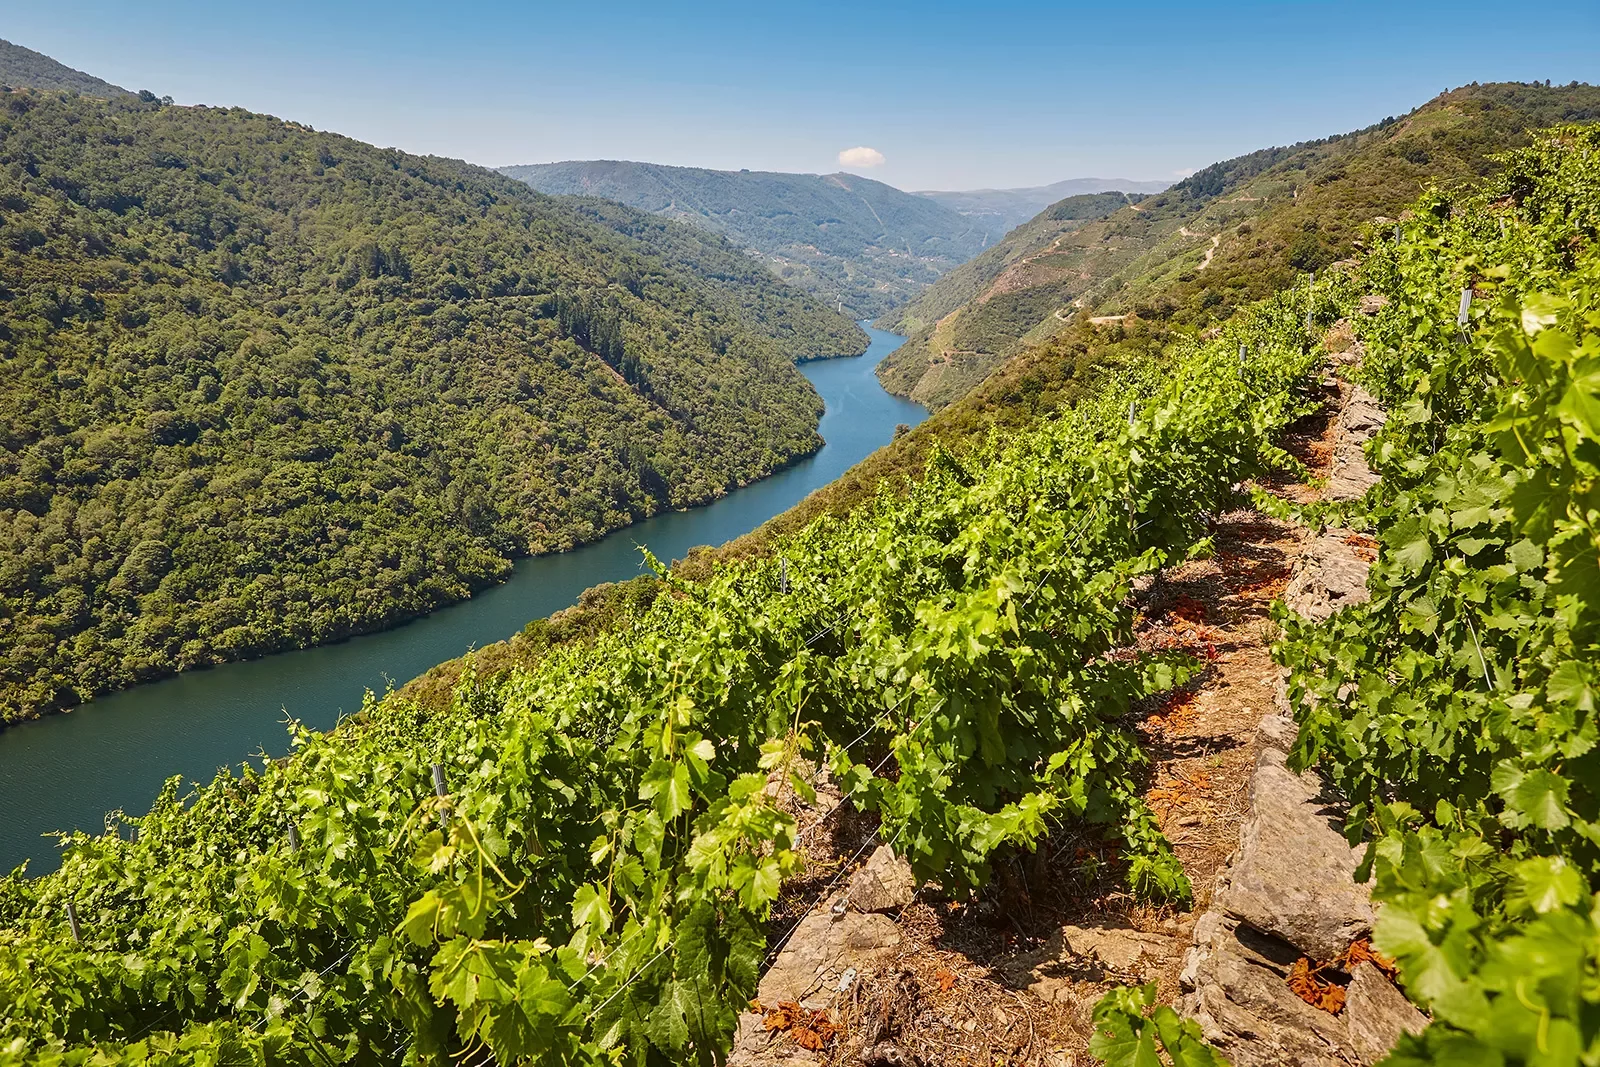 POV shot on hillside vineyard, looking towards river valley.